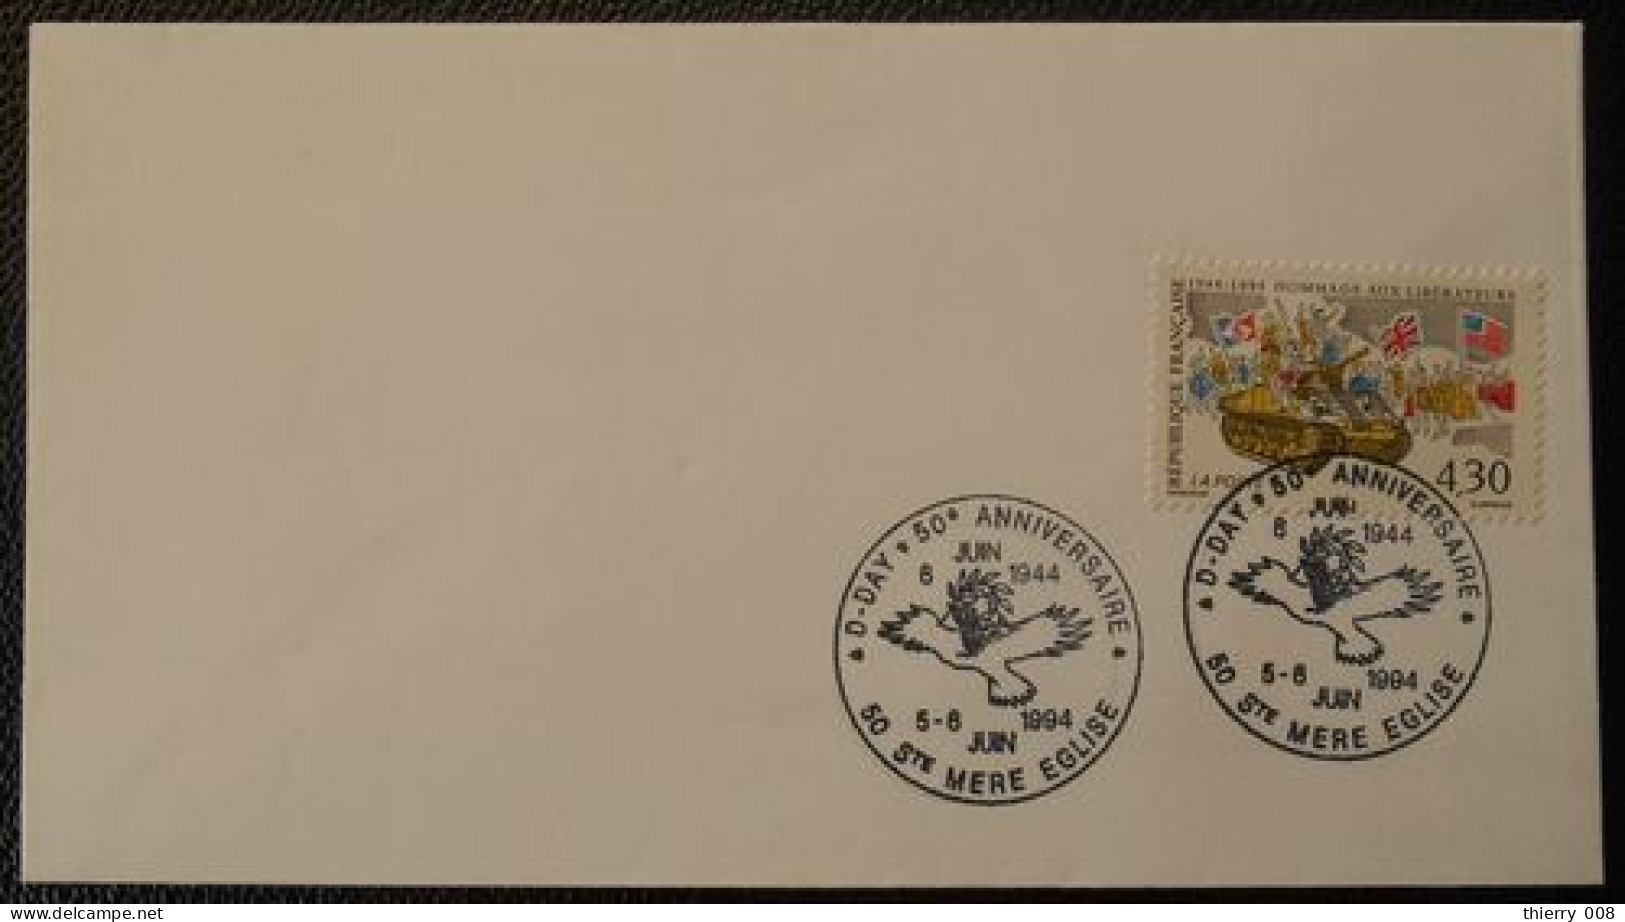 S038 Cachet Temporaire Sainte Mère Eglise 50 Manche D-Day 50 Anniversaire 5 6 Juin 1994 - Commemorative Postmarks